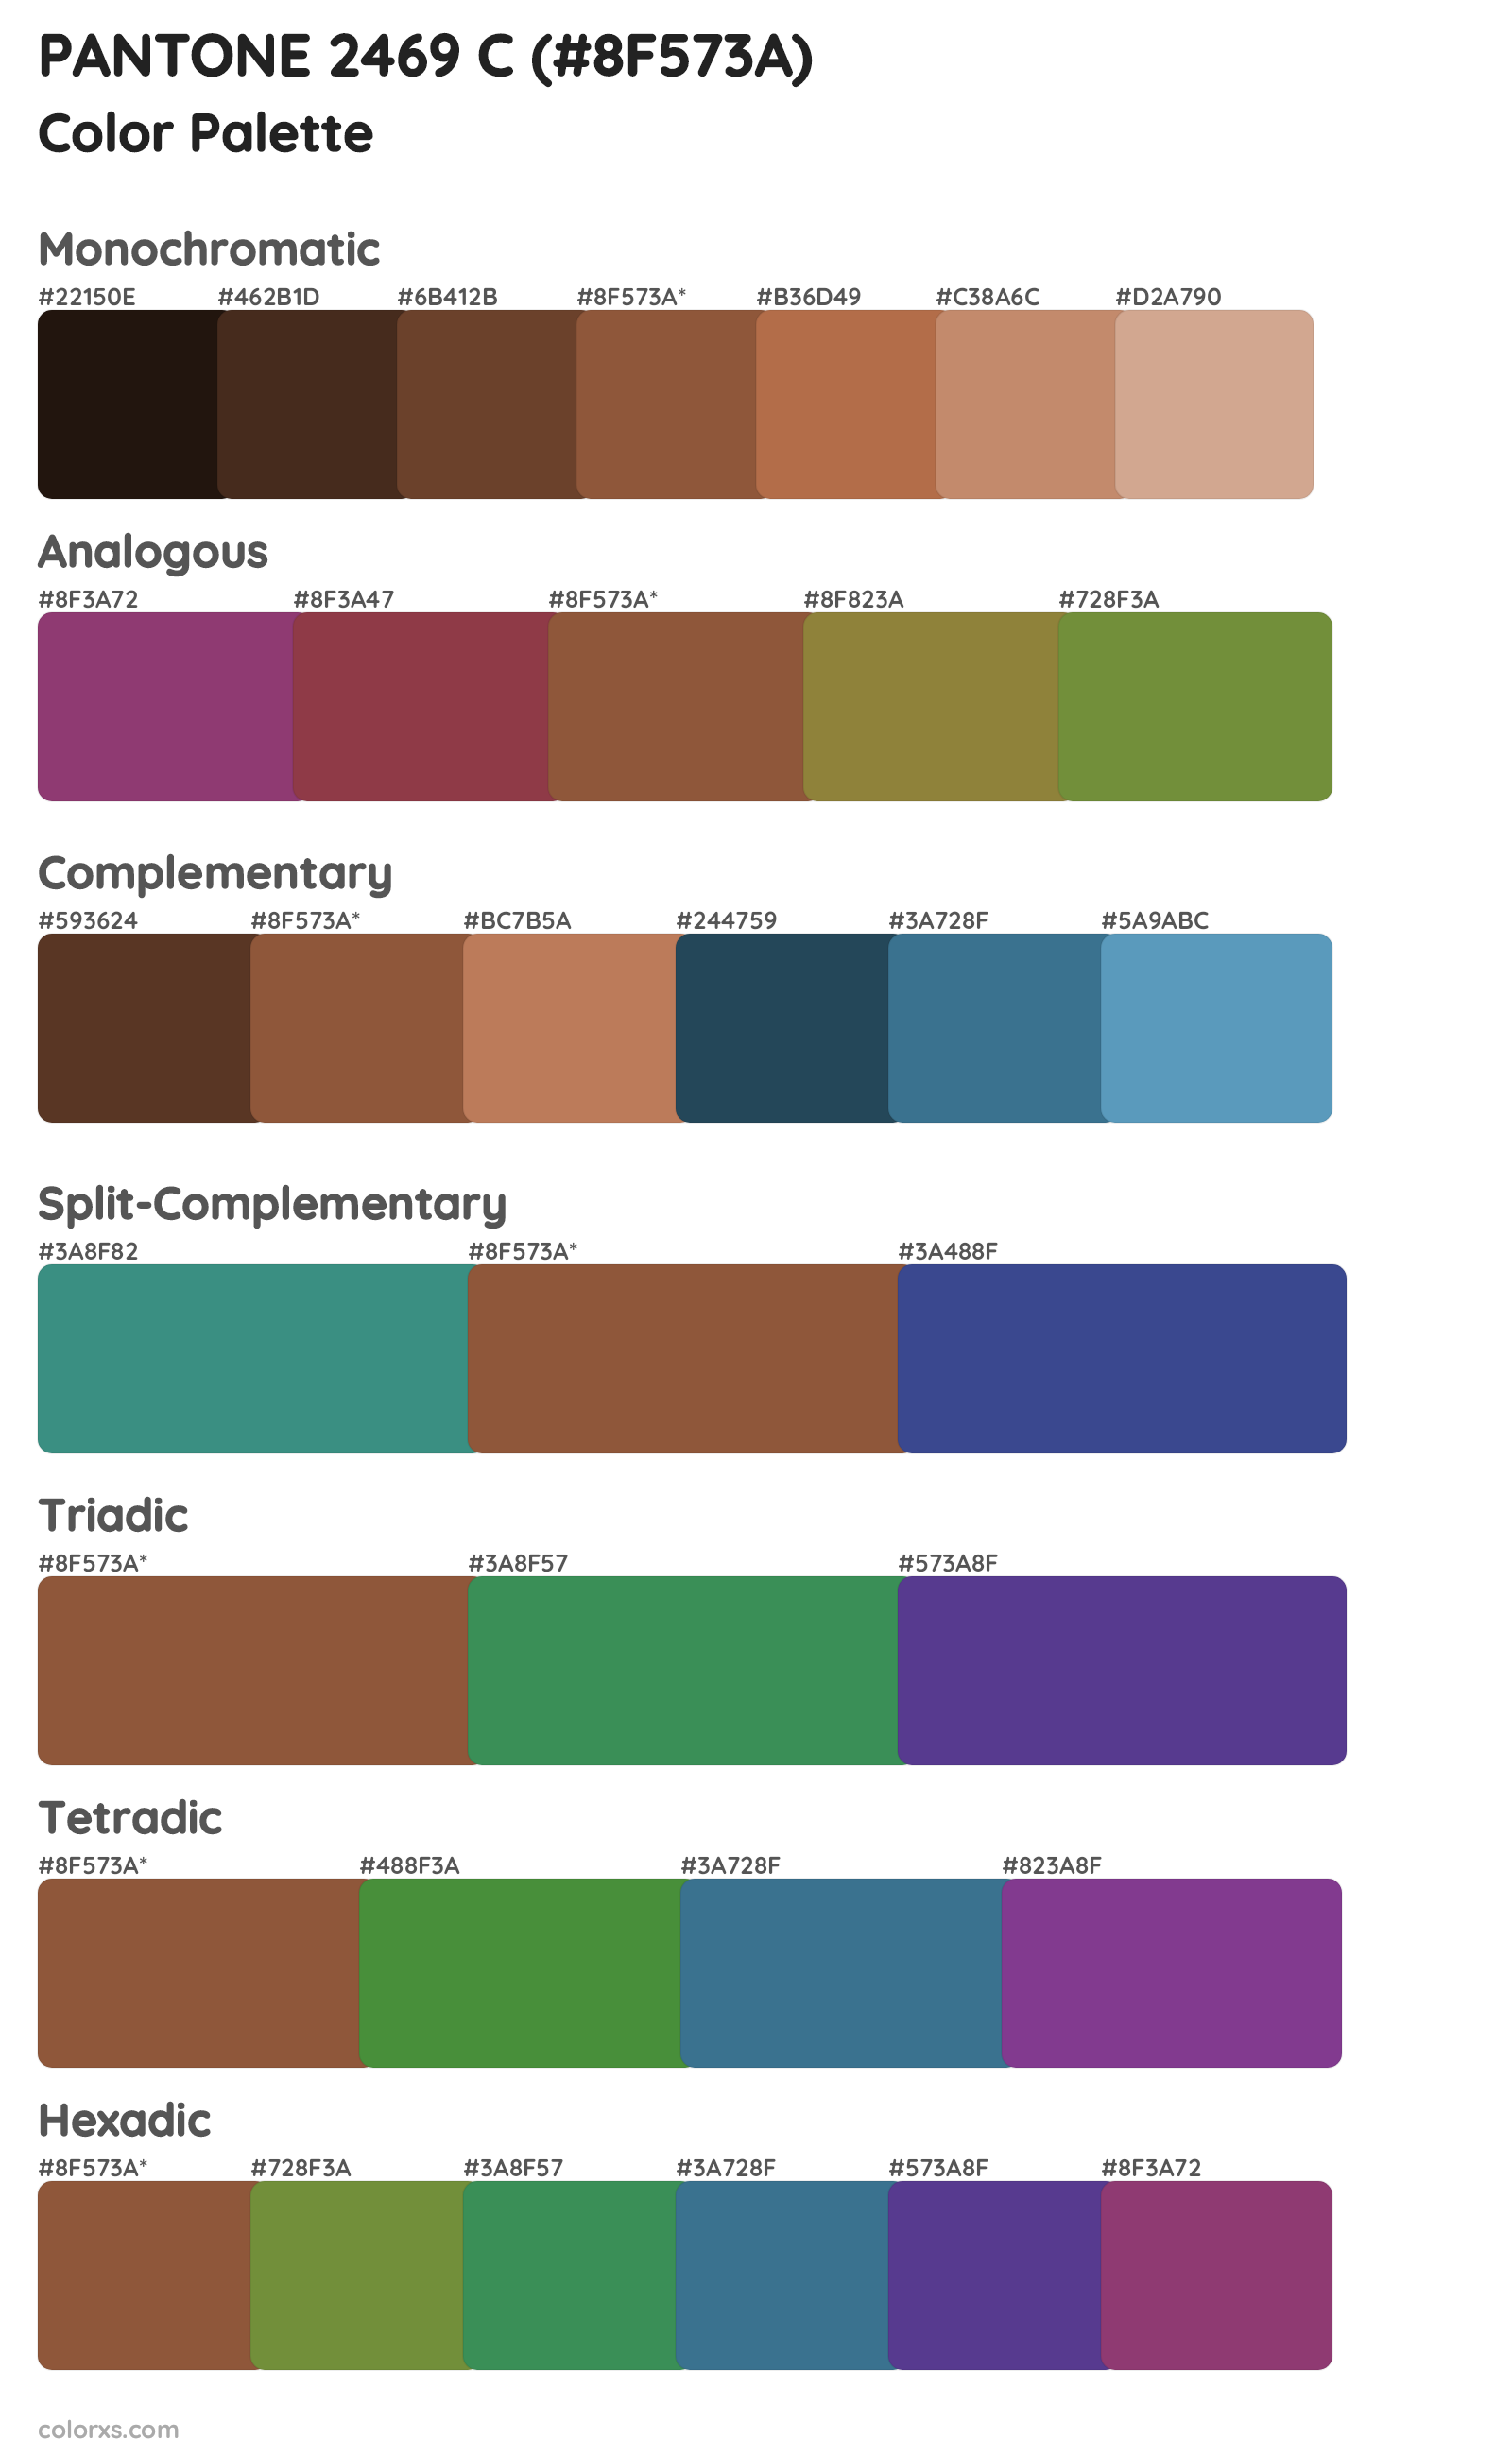 PANTONE 2469 C Color Scheme Palettes